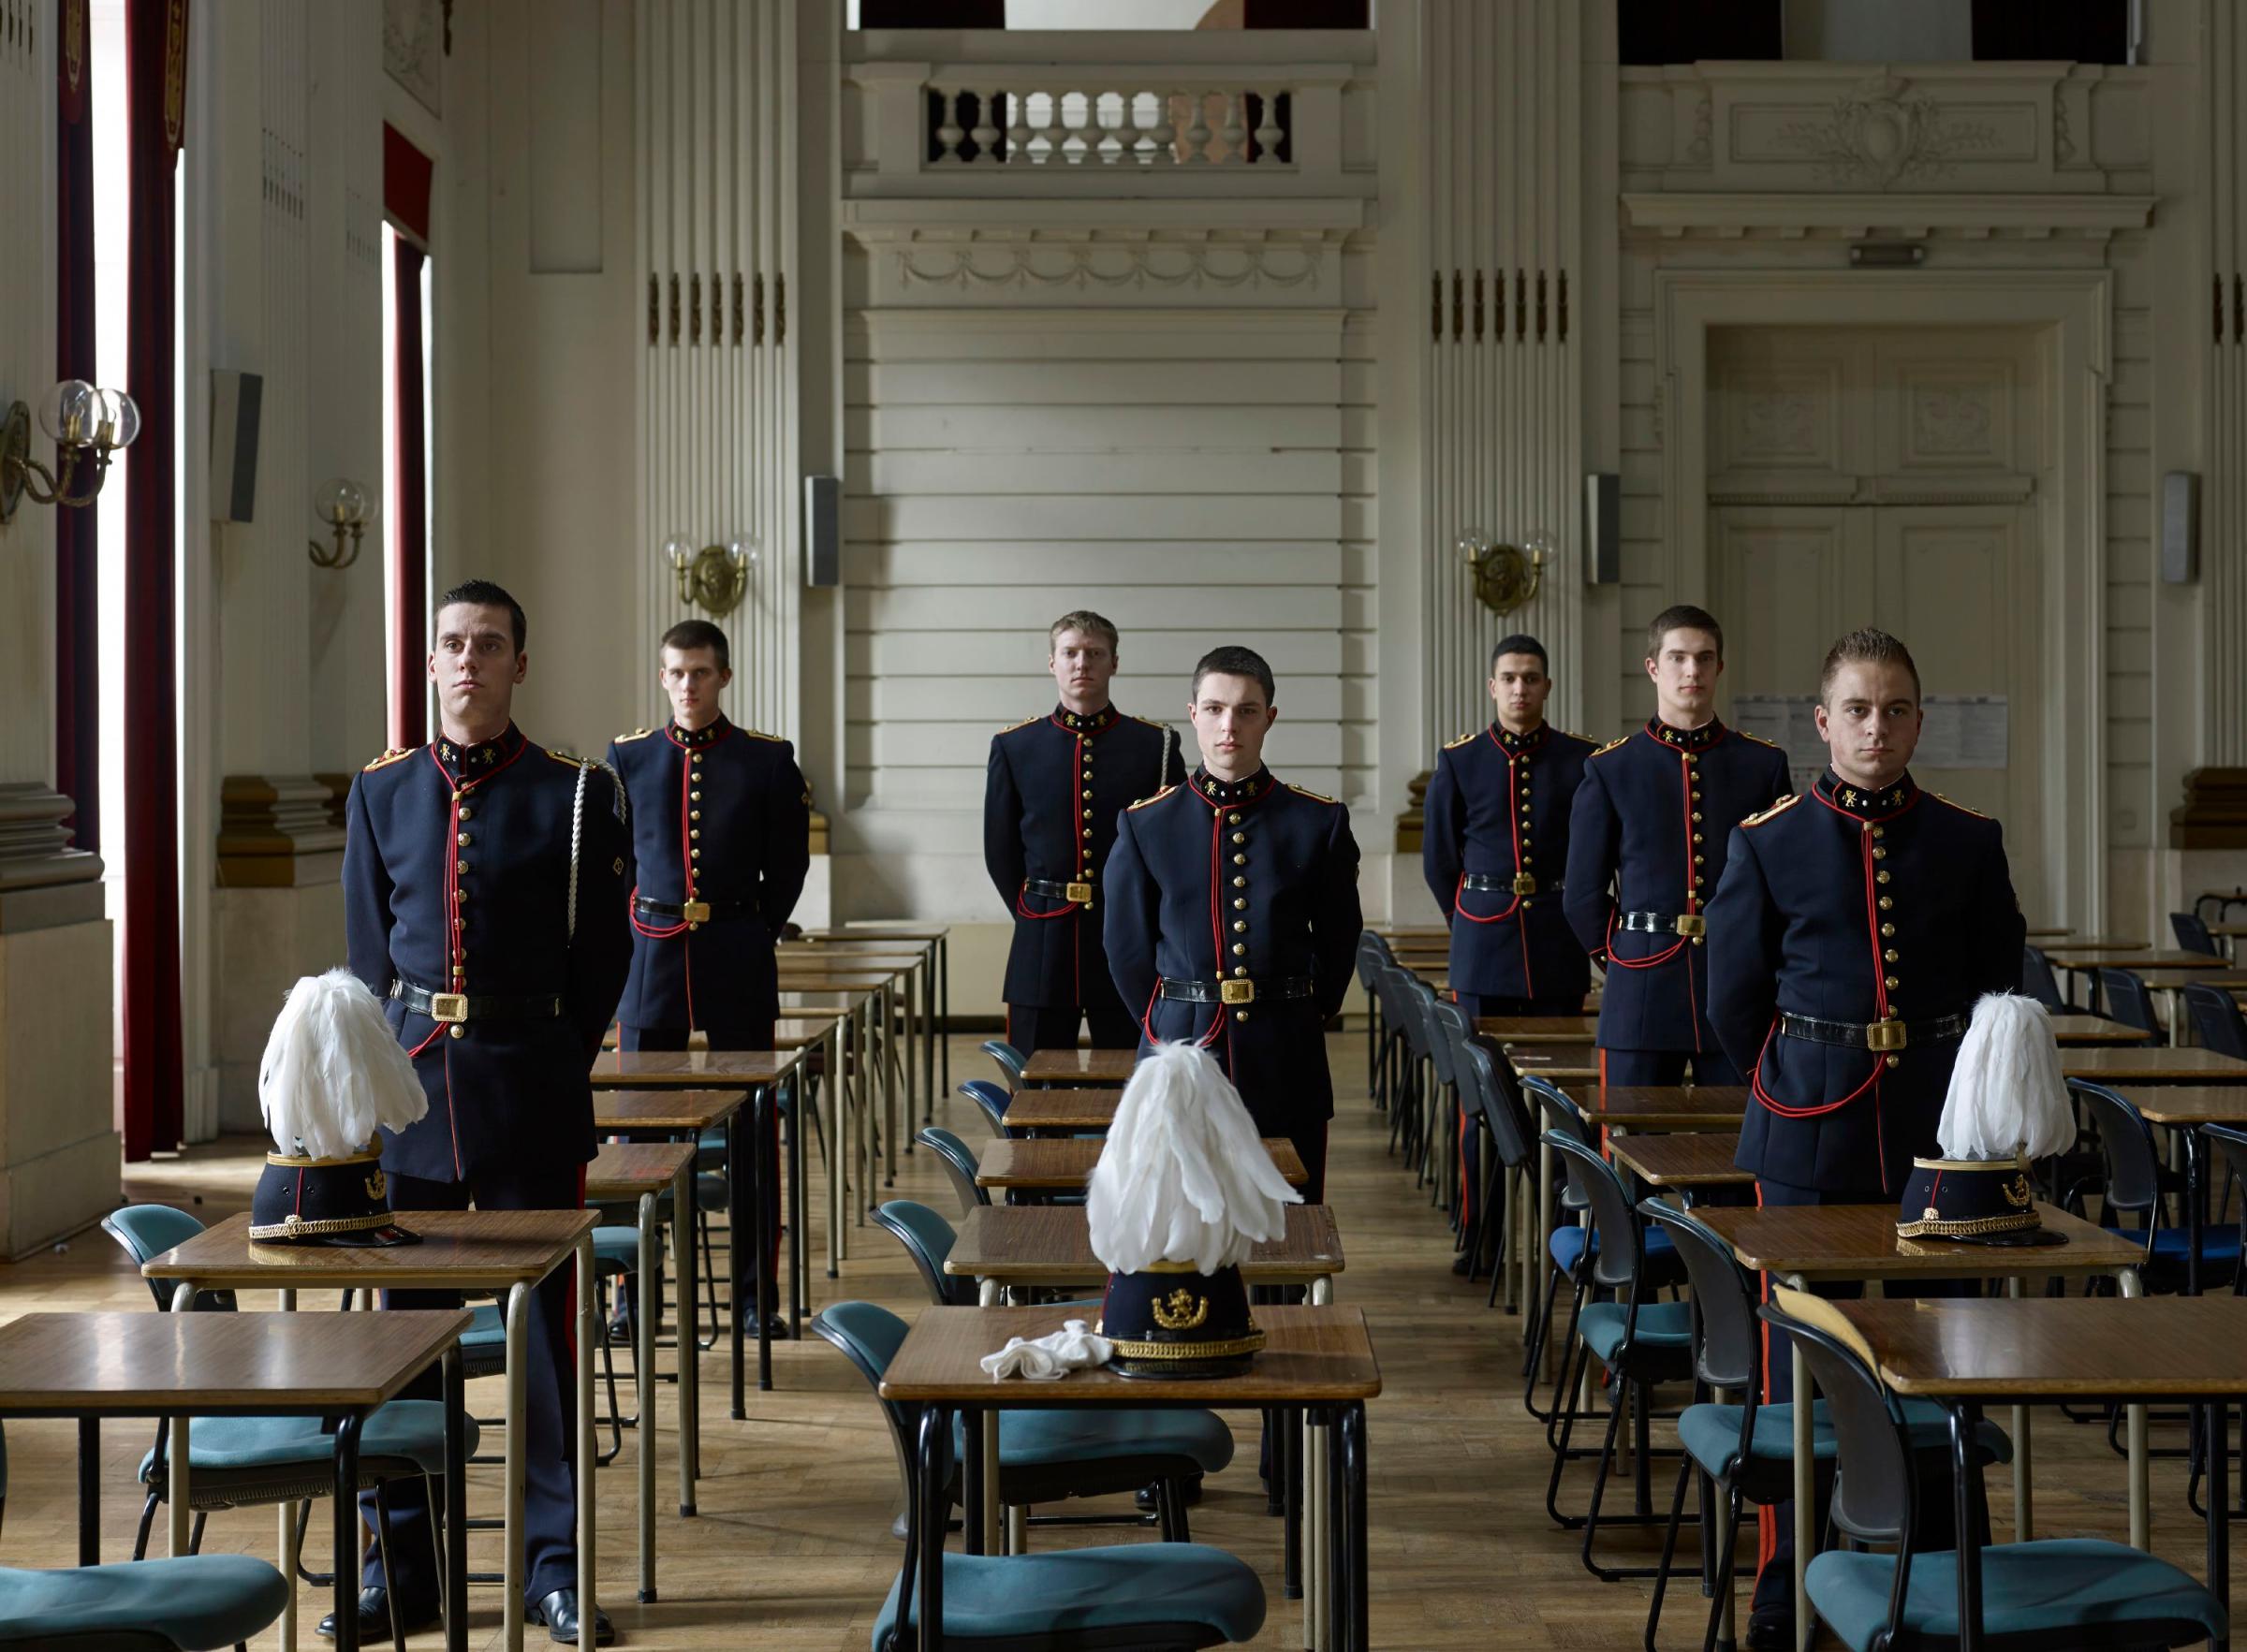 Ecole Royale Militaire. Cadets, Brussels, April 12, 2013.